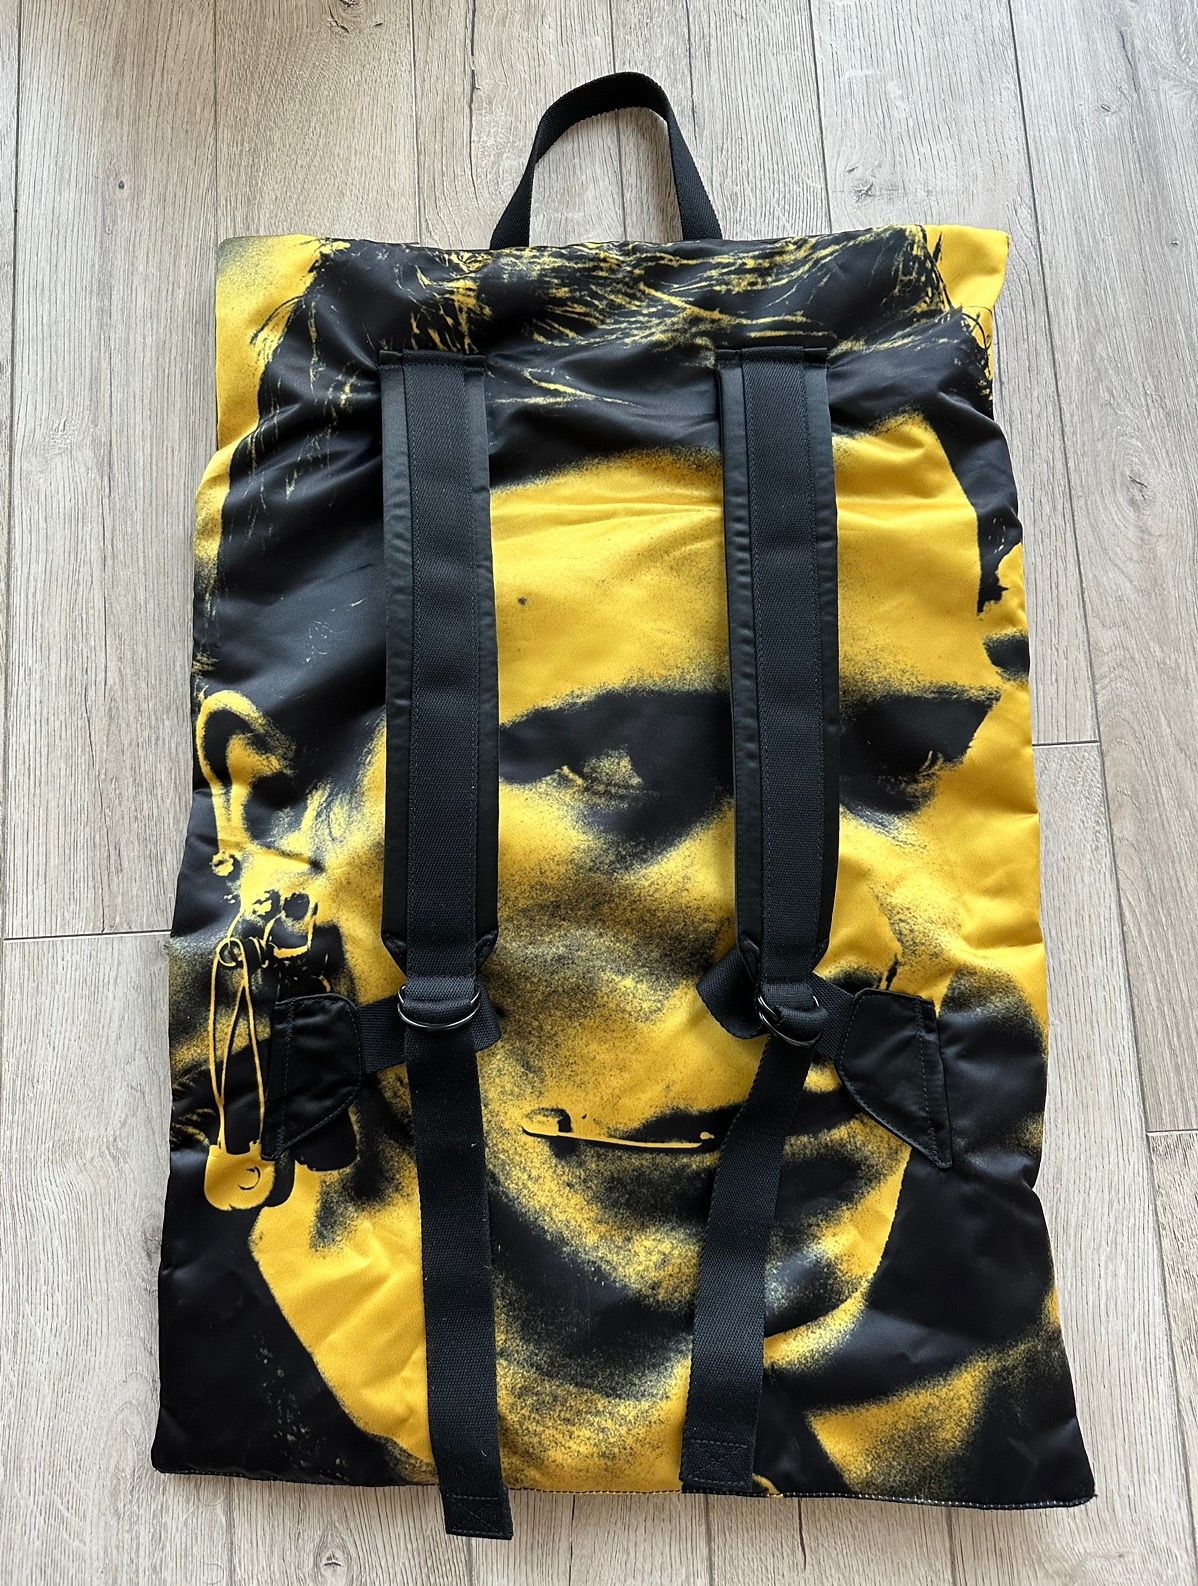 raf simons eastpak poster backpack